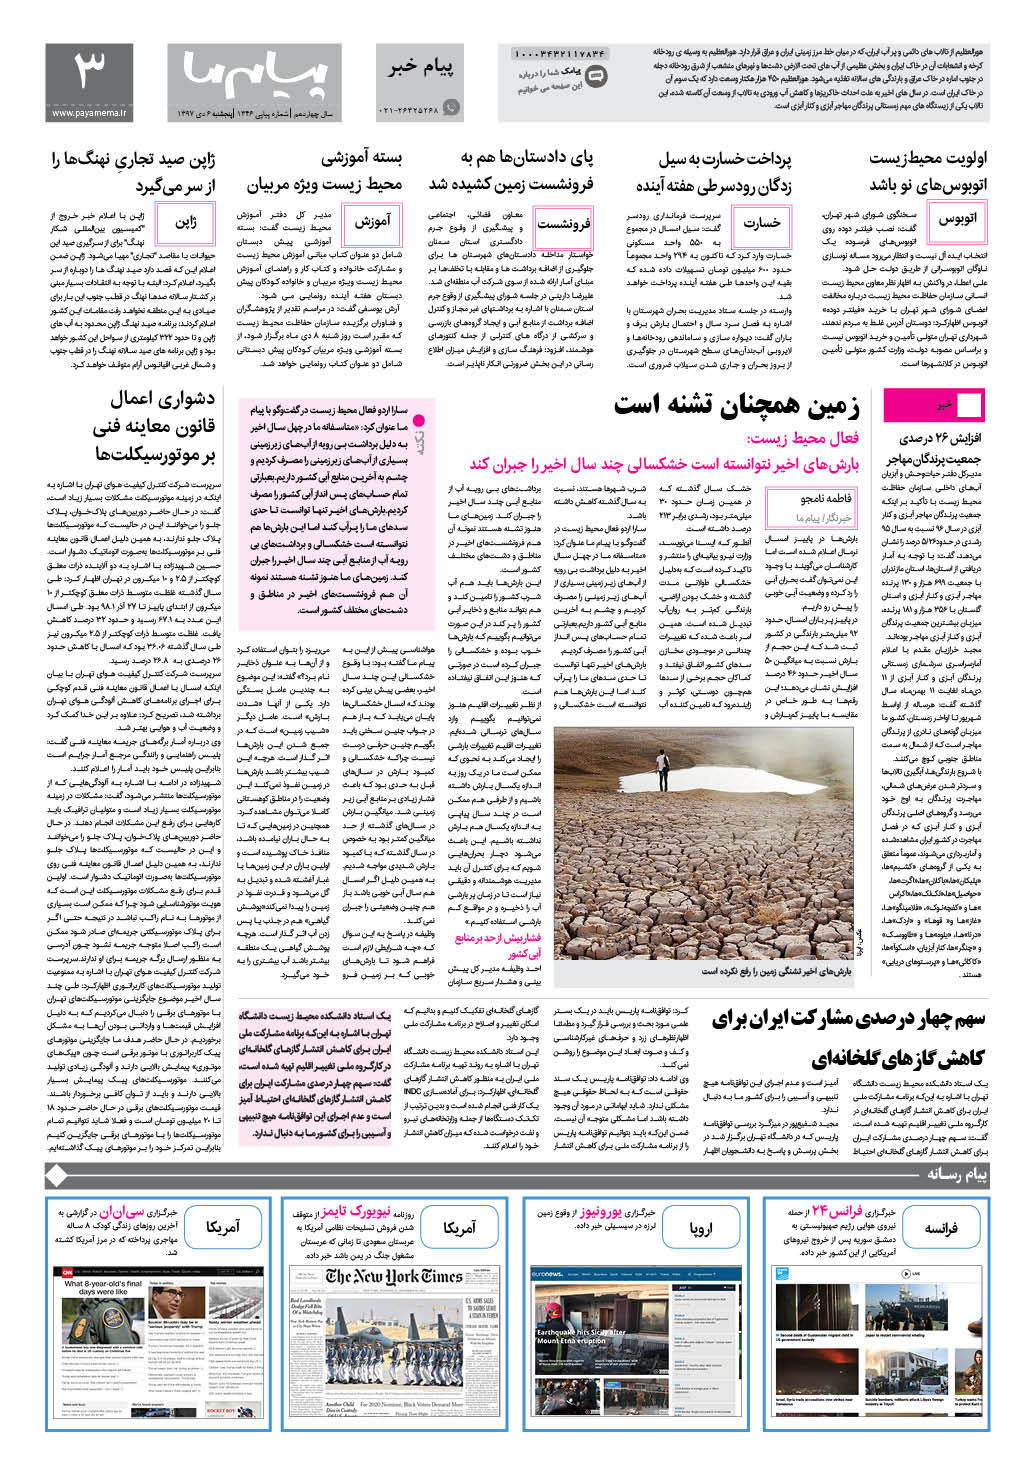 صفحه پیام خبر شماره 1346 روزنامه پیام ما